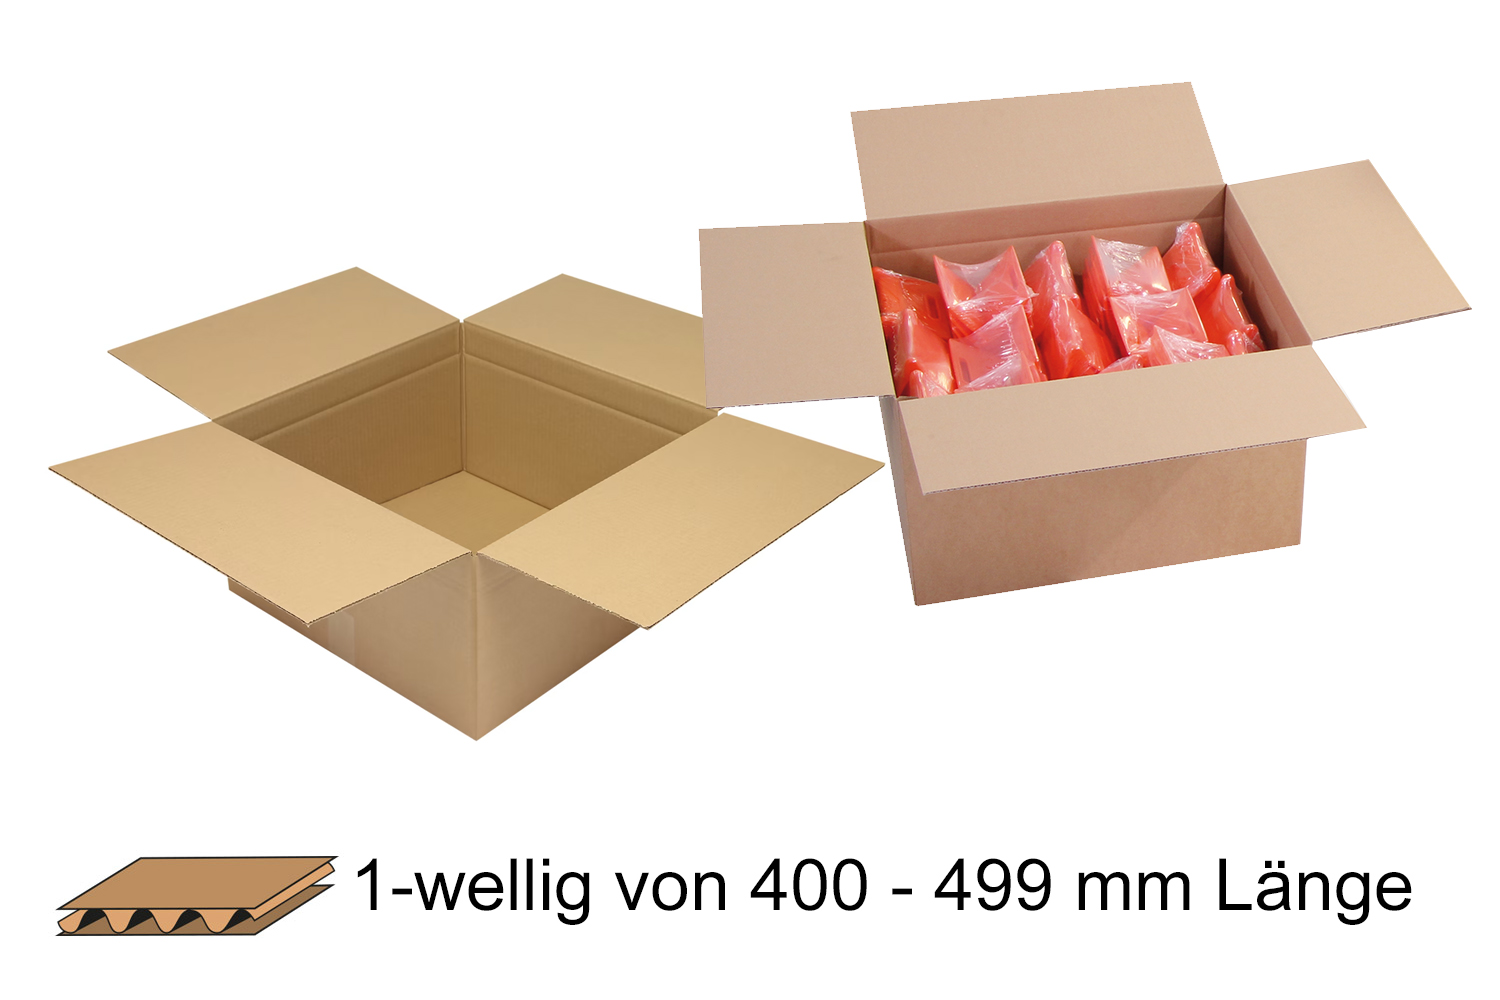 Wellpapp-Faltkarton 1-wellig von 400 - 499 mm Länge